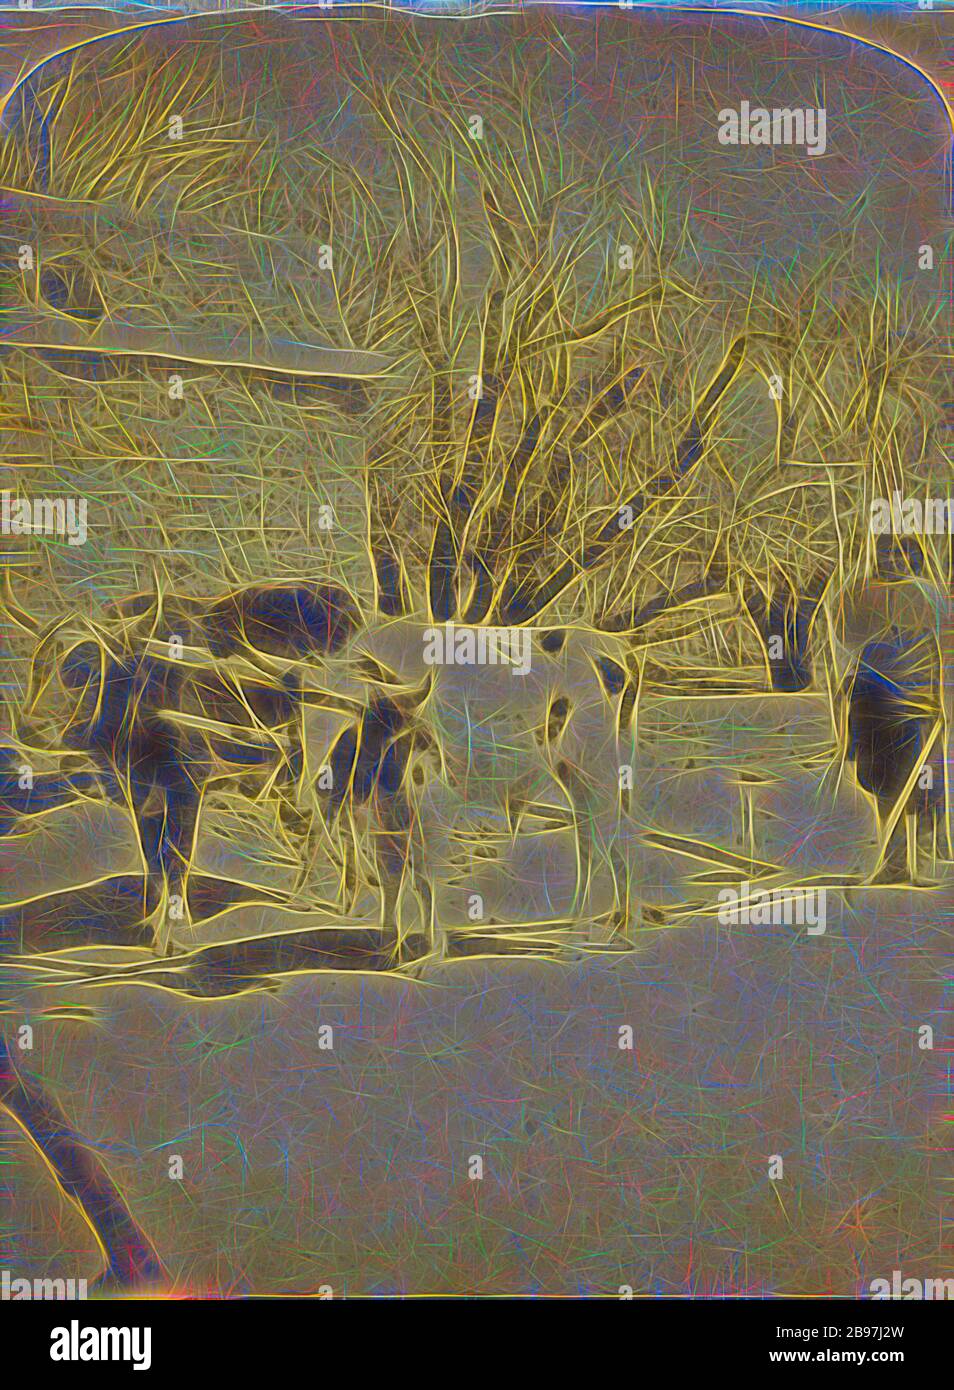 Mex. Pflug, das alte Noah-Patent, das von den Testikons verwendet wird. Pueblo-Tesuque-Serie., George C. Bennett (amerikanisch, zwischen 216-285), ca. 1885, Albumen-Silberdruck, von Gibon neu vorgestellt, Design von warmem, fröhlichem Leuchten von Helligkeit und Lichtstrahlen. Klassische Kunst mit moderner Note neu erfunden. Fotografie, inspiriert vom Futurismus, die dynamische Energie moderner Technologie, Bewegung, Geschwindigkeit und Kultur revolutionieren. Stockfoto